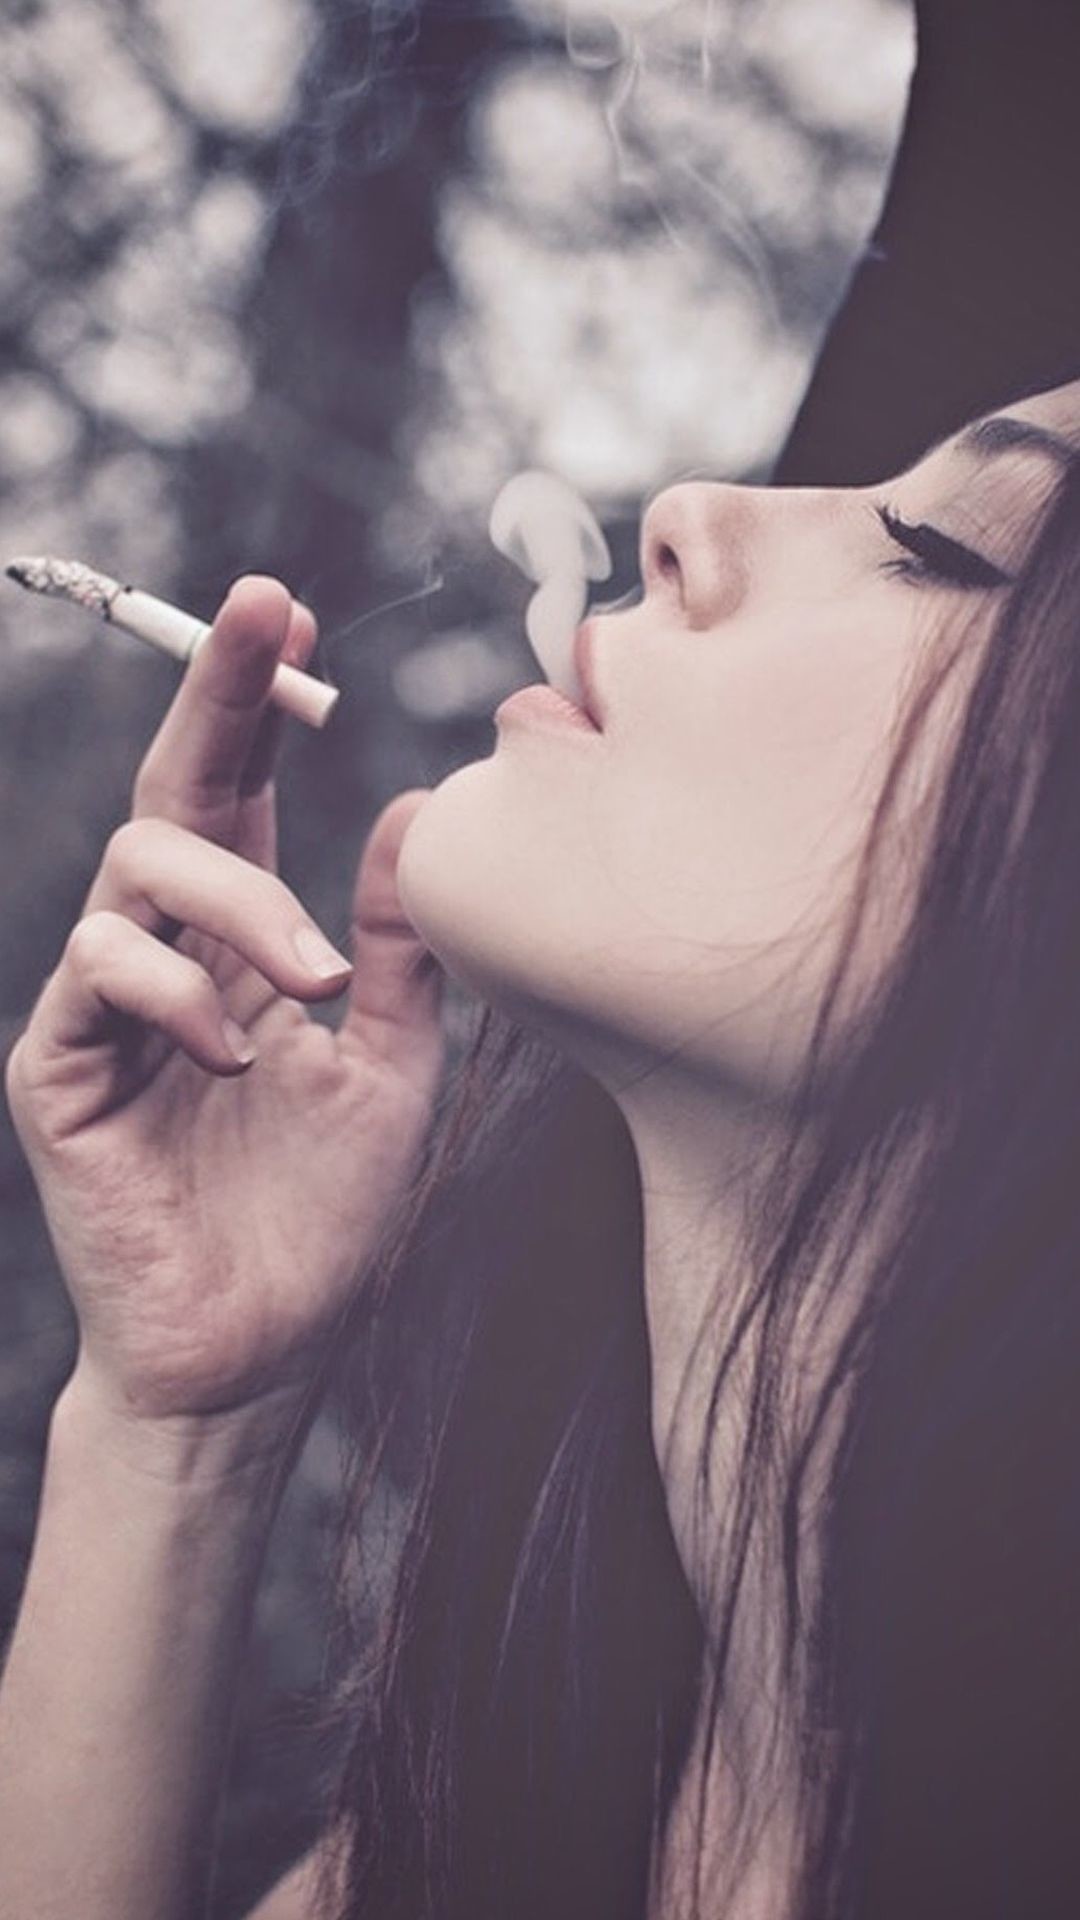 Top hình ảnh con gái hút thuốc cực chất, tâm trạng